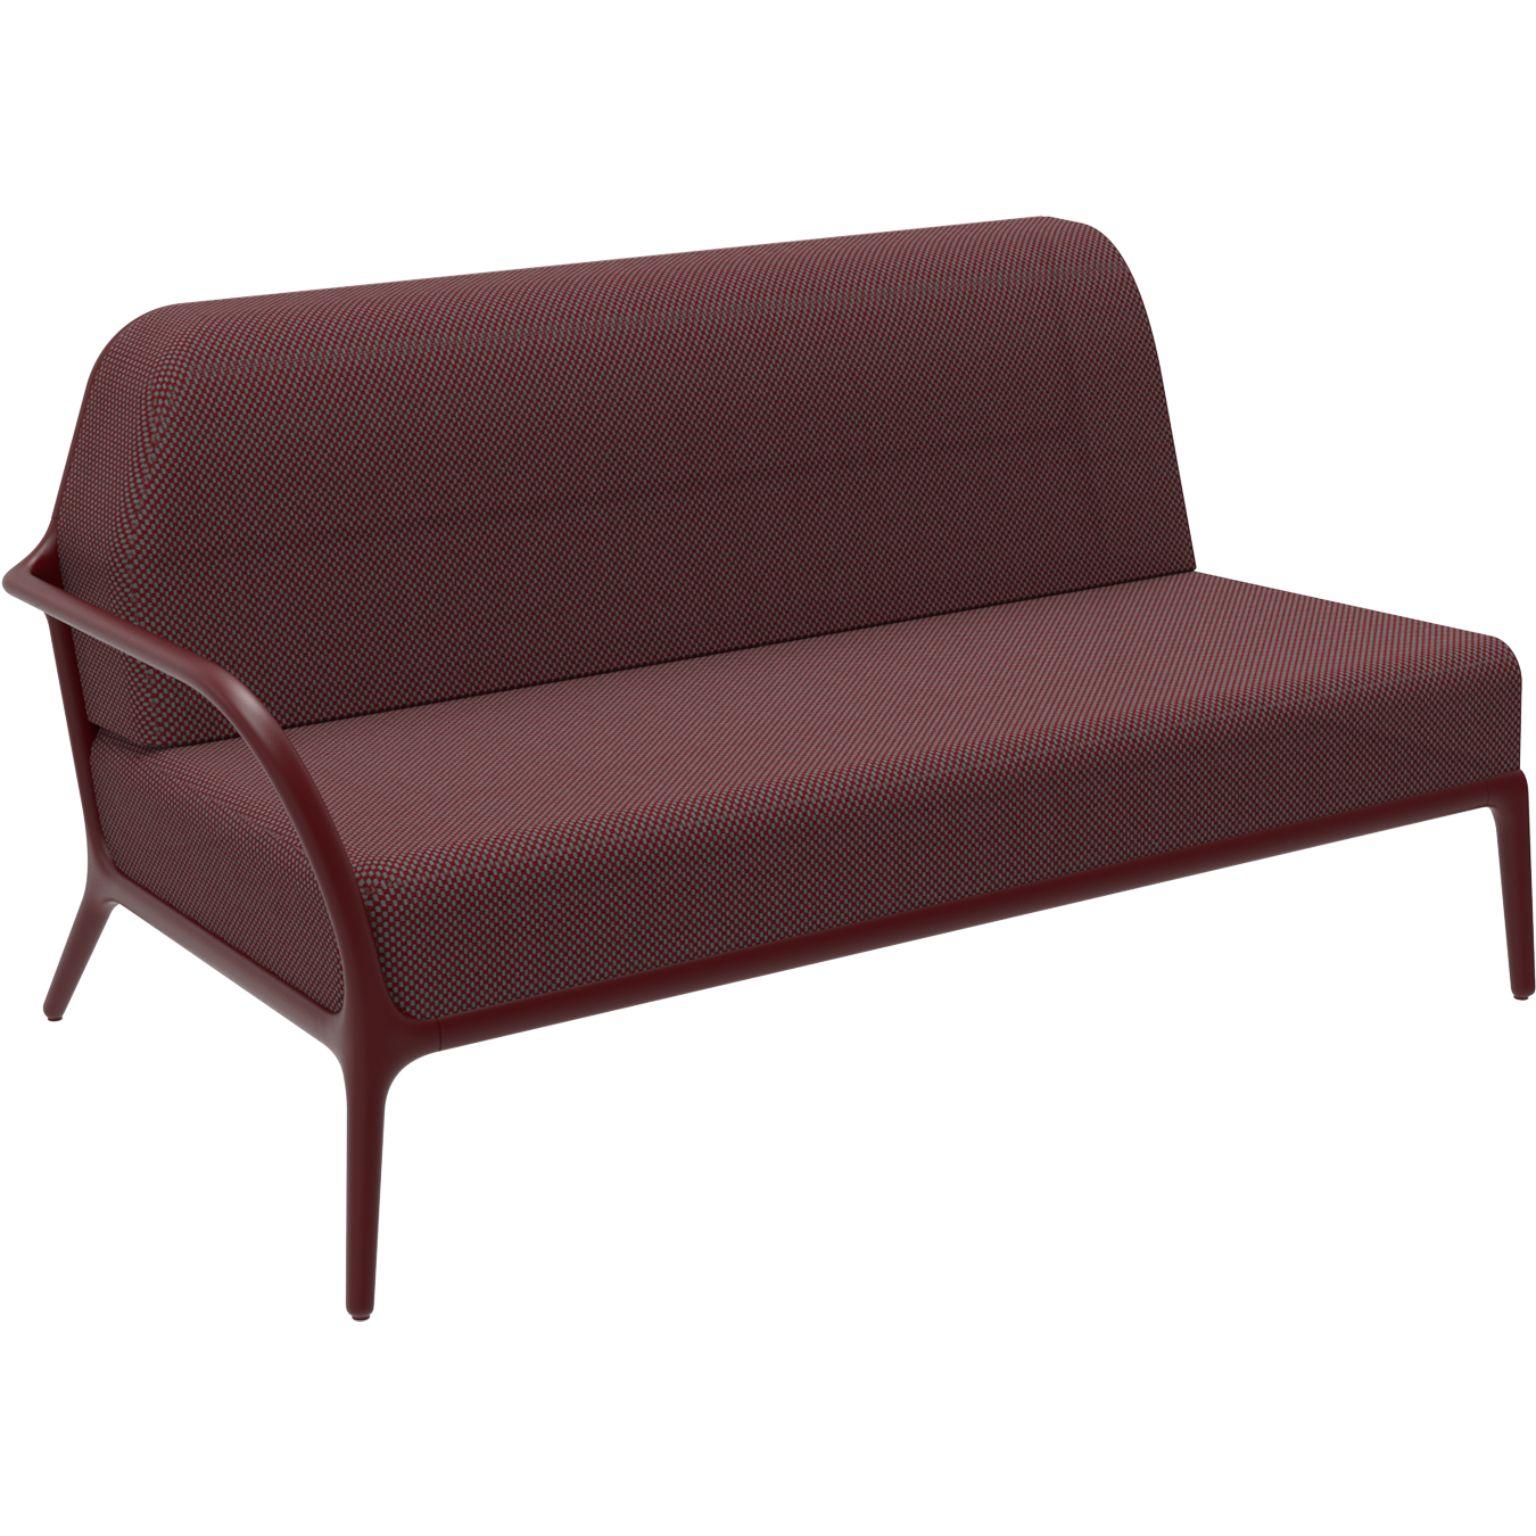 Xaloc Right 160 burgunderfarbenes modulares sofa von MOWEE
Abmessungen: T100 x B160 x H81 cm (Sitzhöhe 42 cm)
MATERIAL: Aluminium, Textil
Gewicht: 37 kg
Auch in verschiedenen Farben und Ausführungen erhältlich. 

 Xaloc synthetisiert die